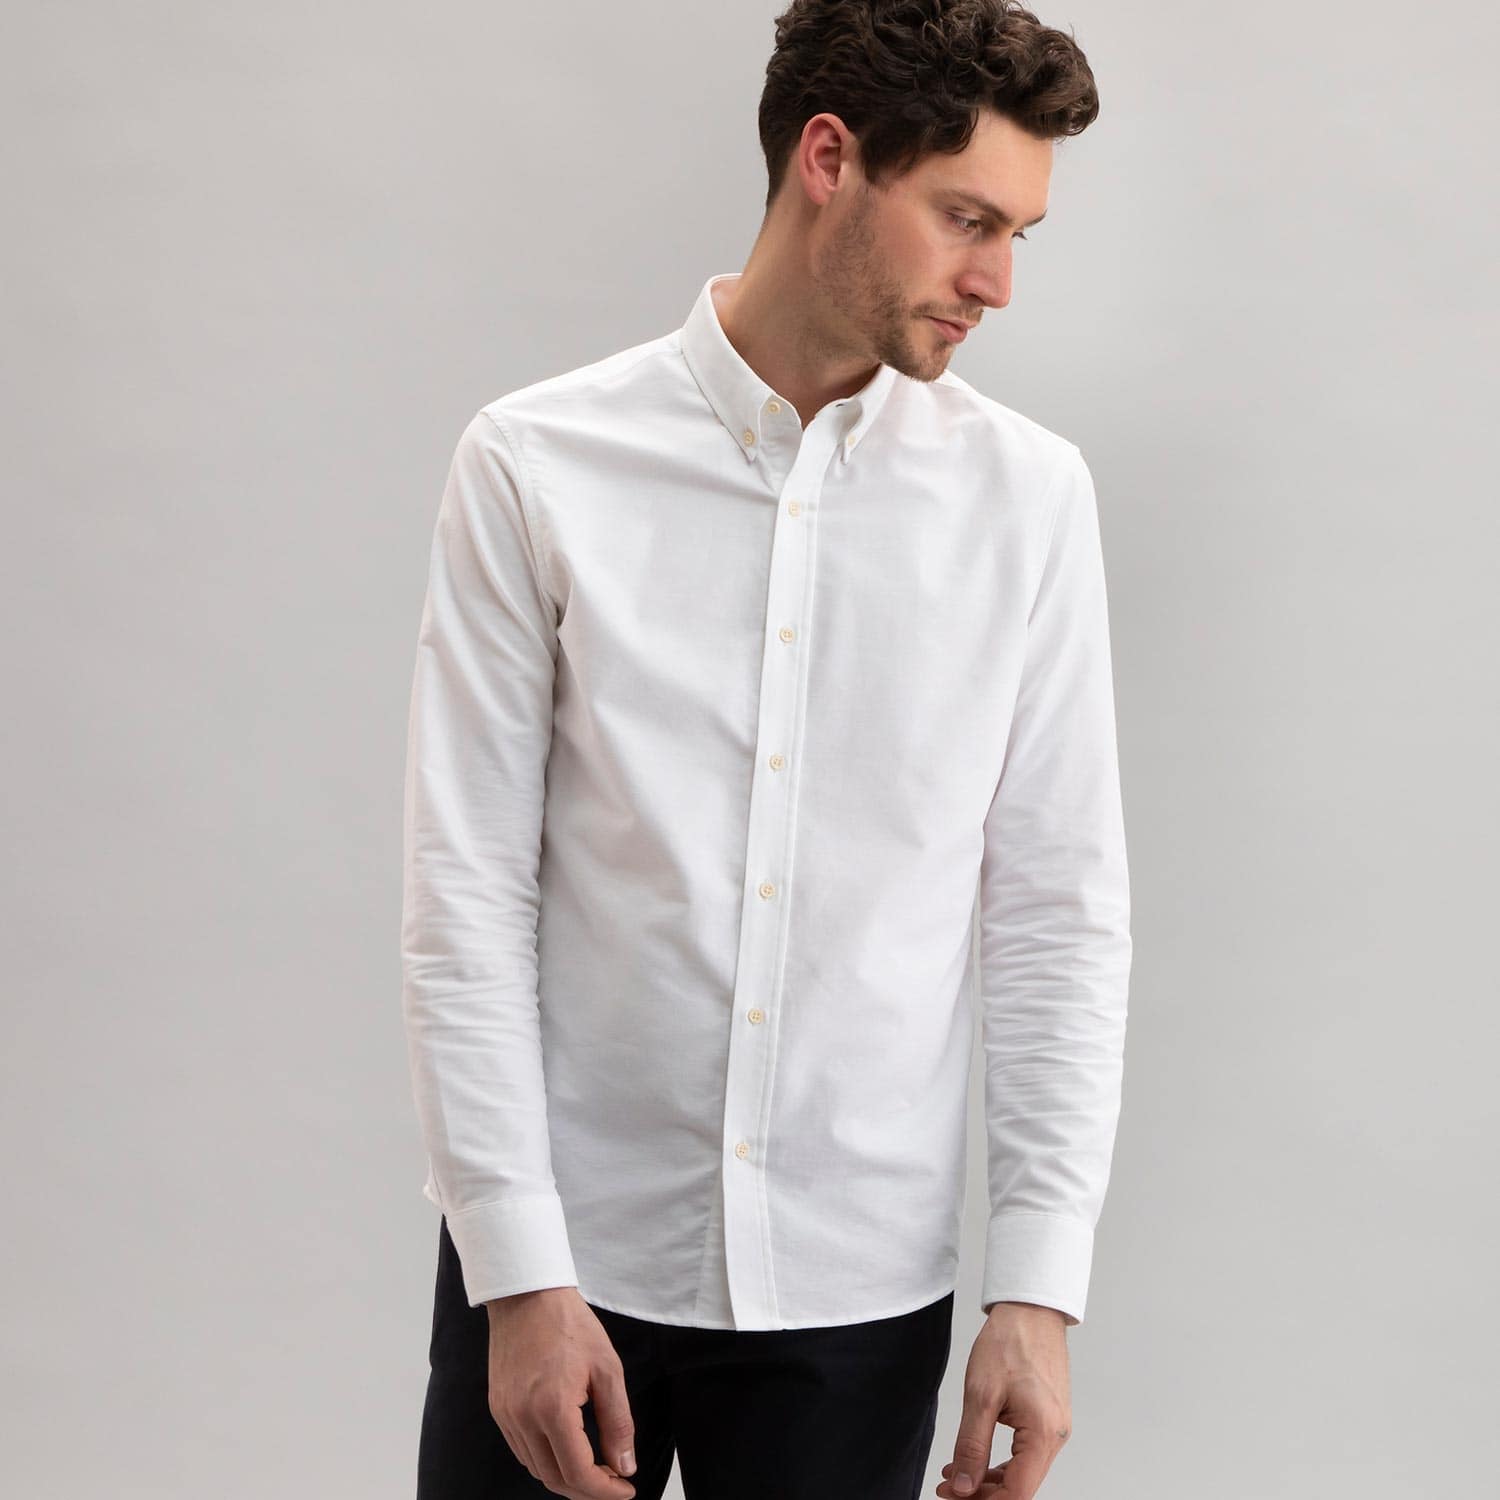 Oxford Shirt White - Todd Shelton